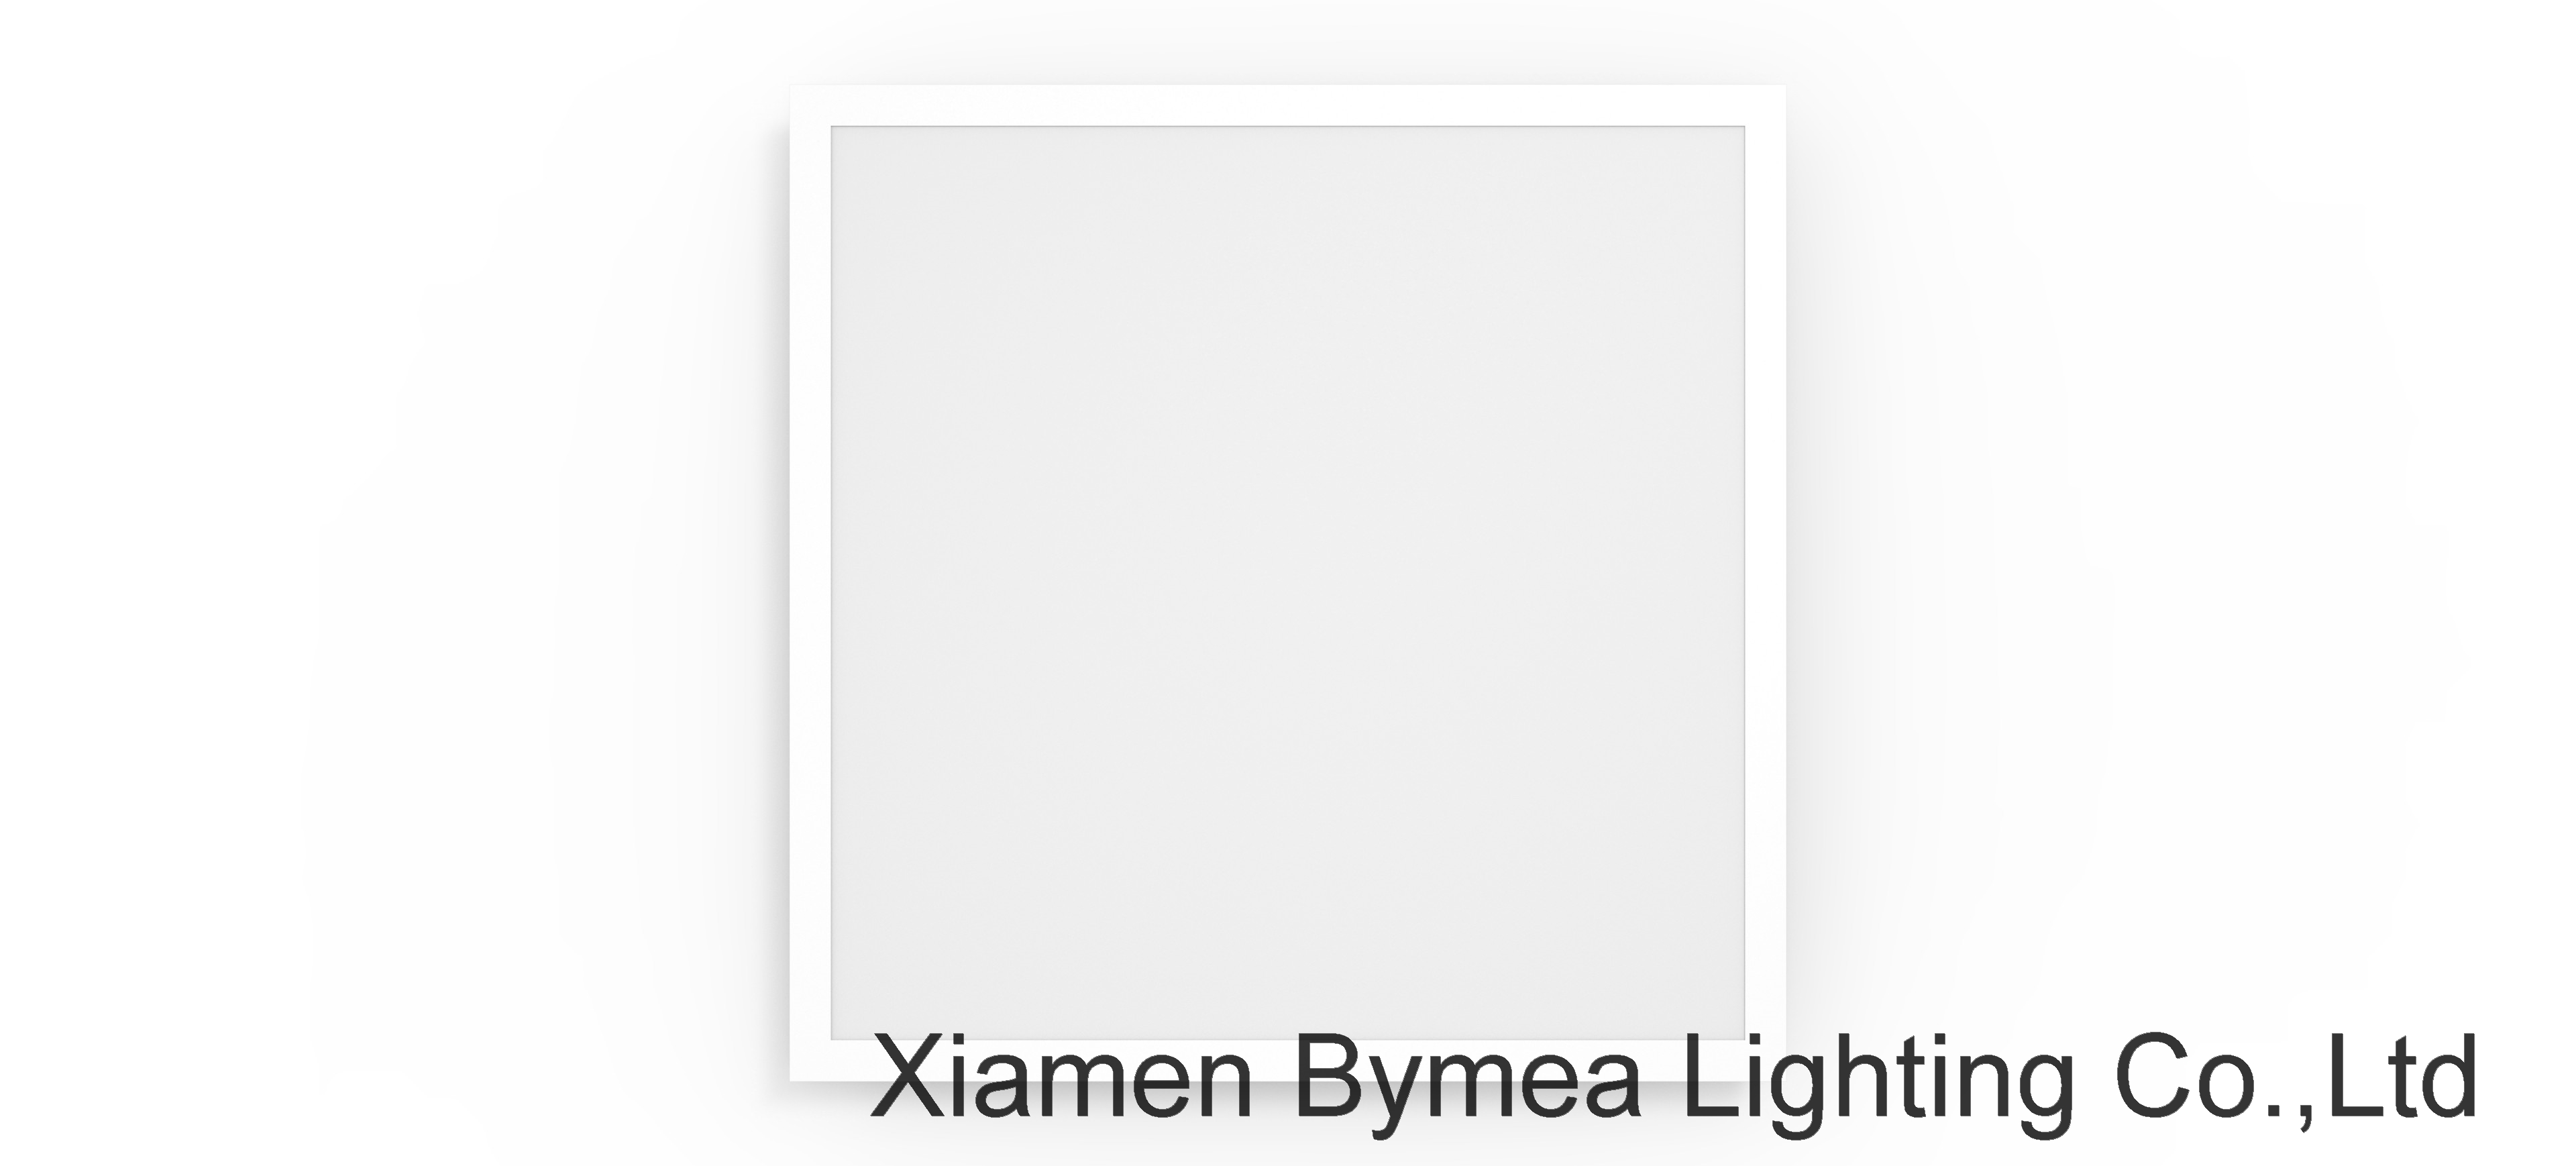 LED BackLight Panels 2x2-30W 3300lm